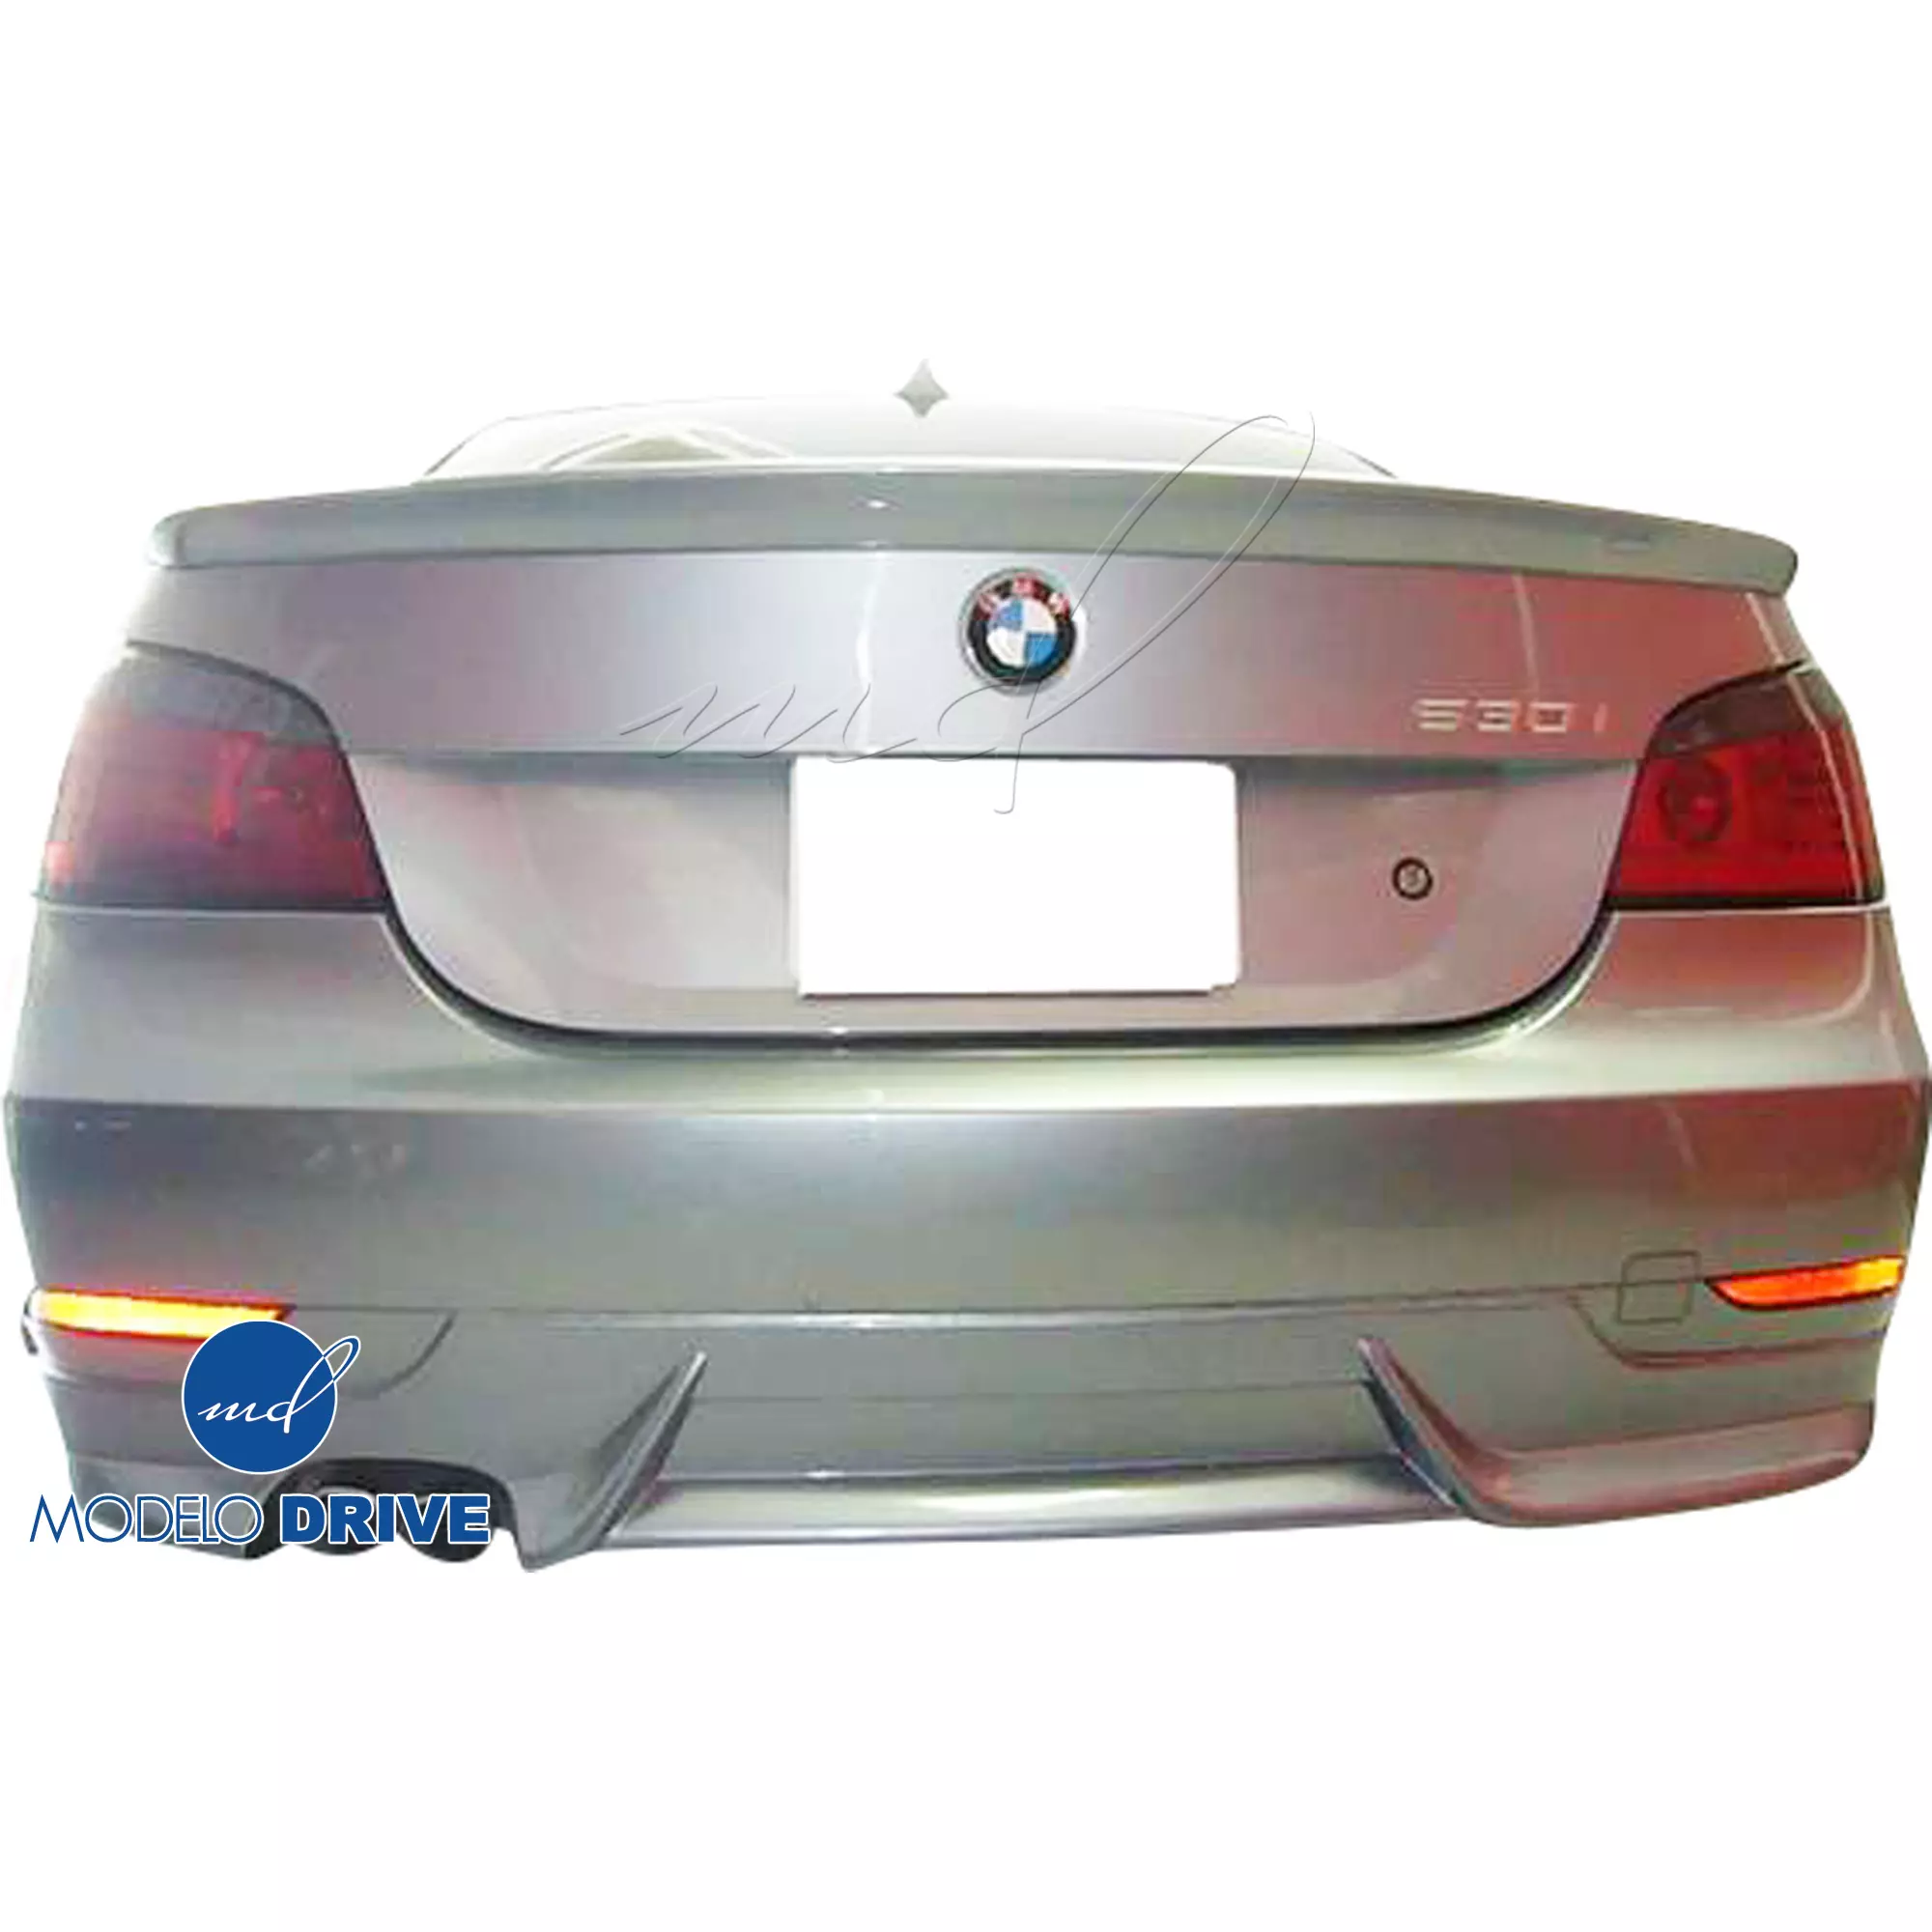 ModeloDrive FRP ASCH Body Kit 4pc > BMW 5-Series E60 2004-2010 > 4dr - Image 19